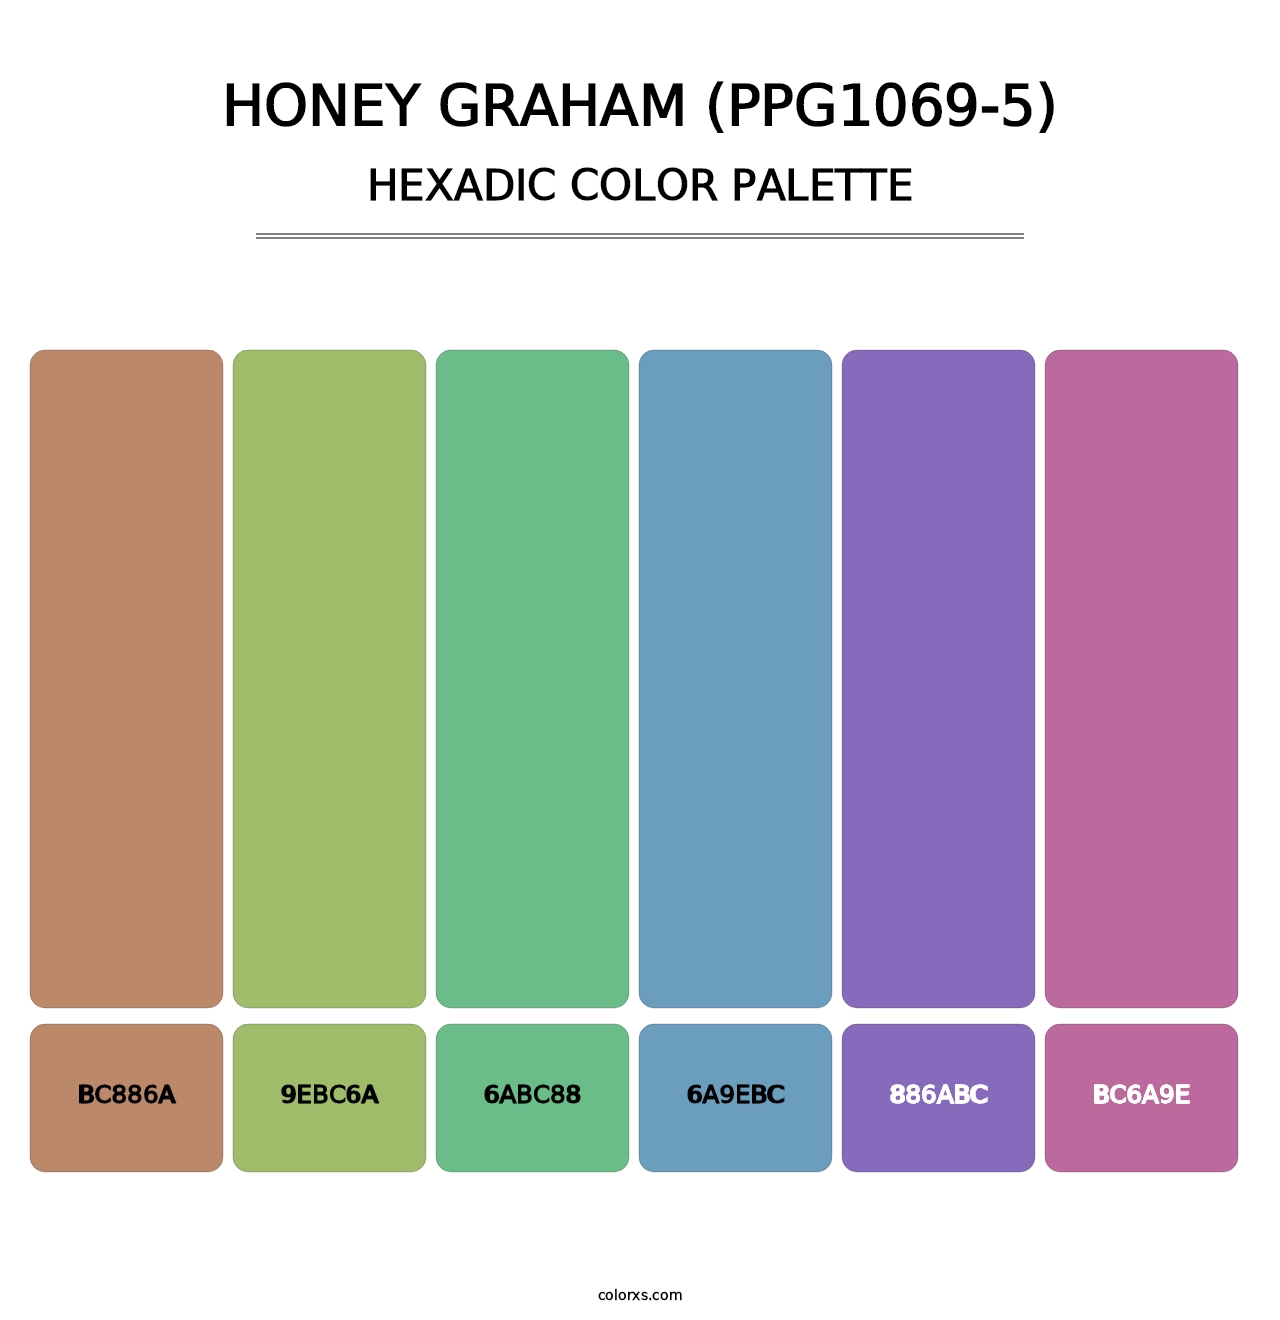 Honey Graham (PPG1069-5) - Hexadic Color Palette